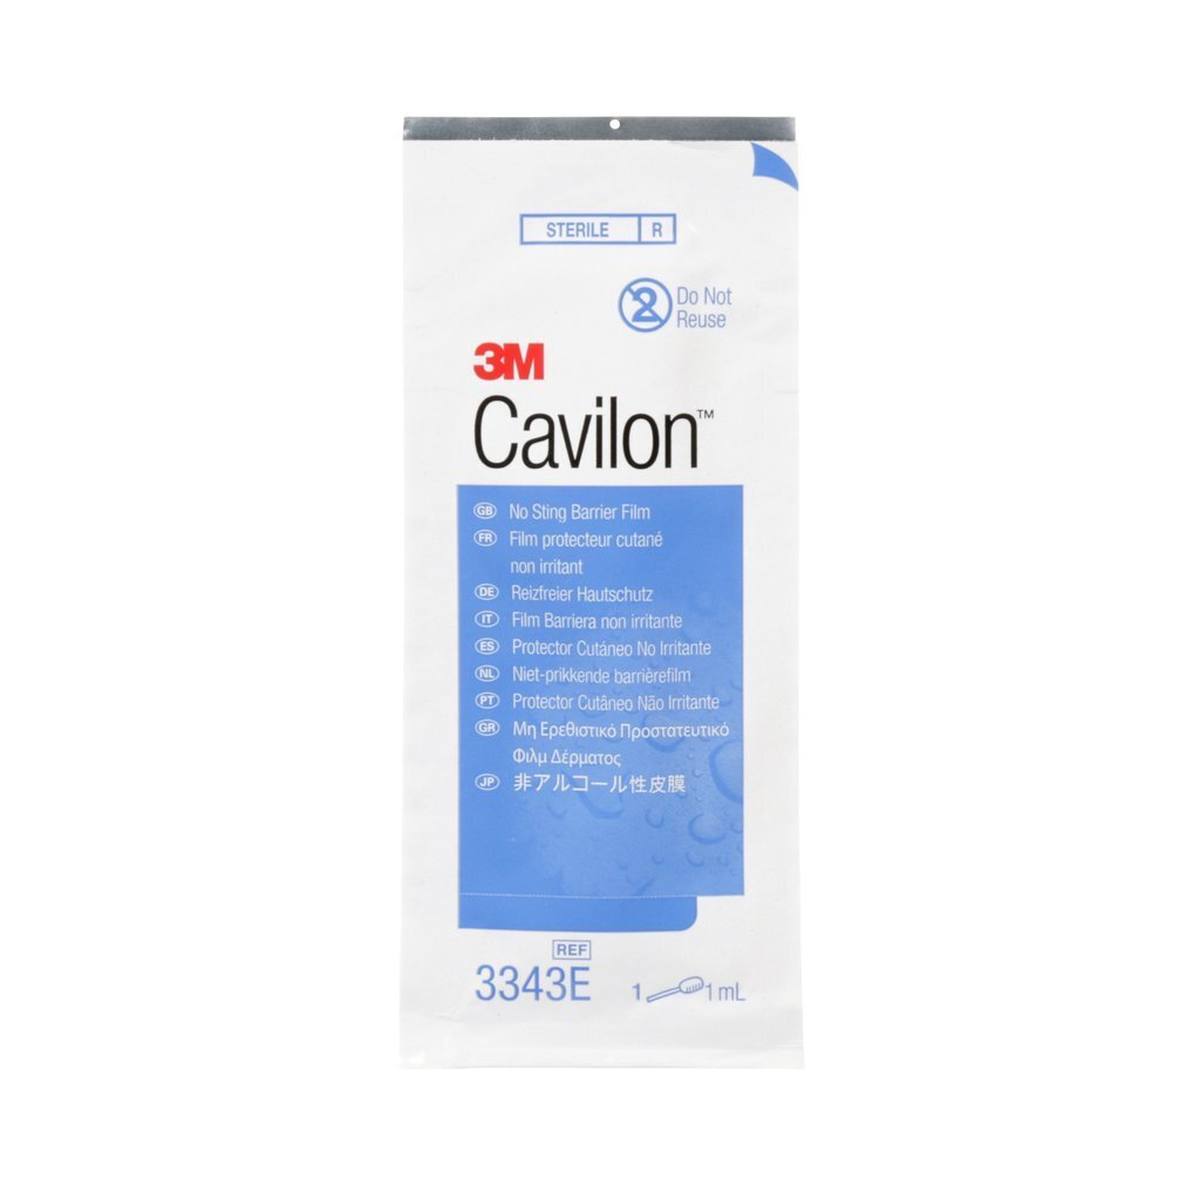 3M Cavilon protección cutánea no irritante 3343E, aplicador de espuma de 1 ml